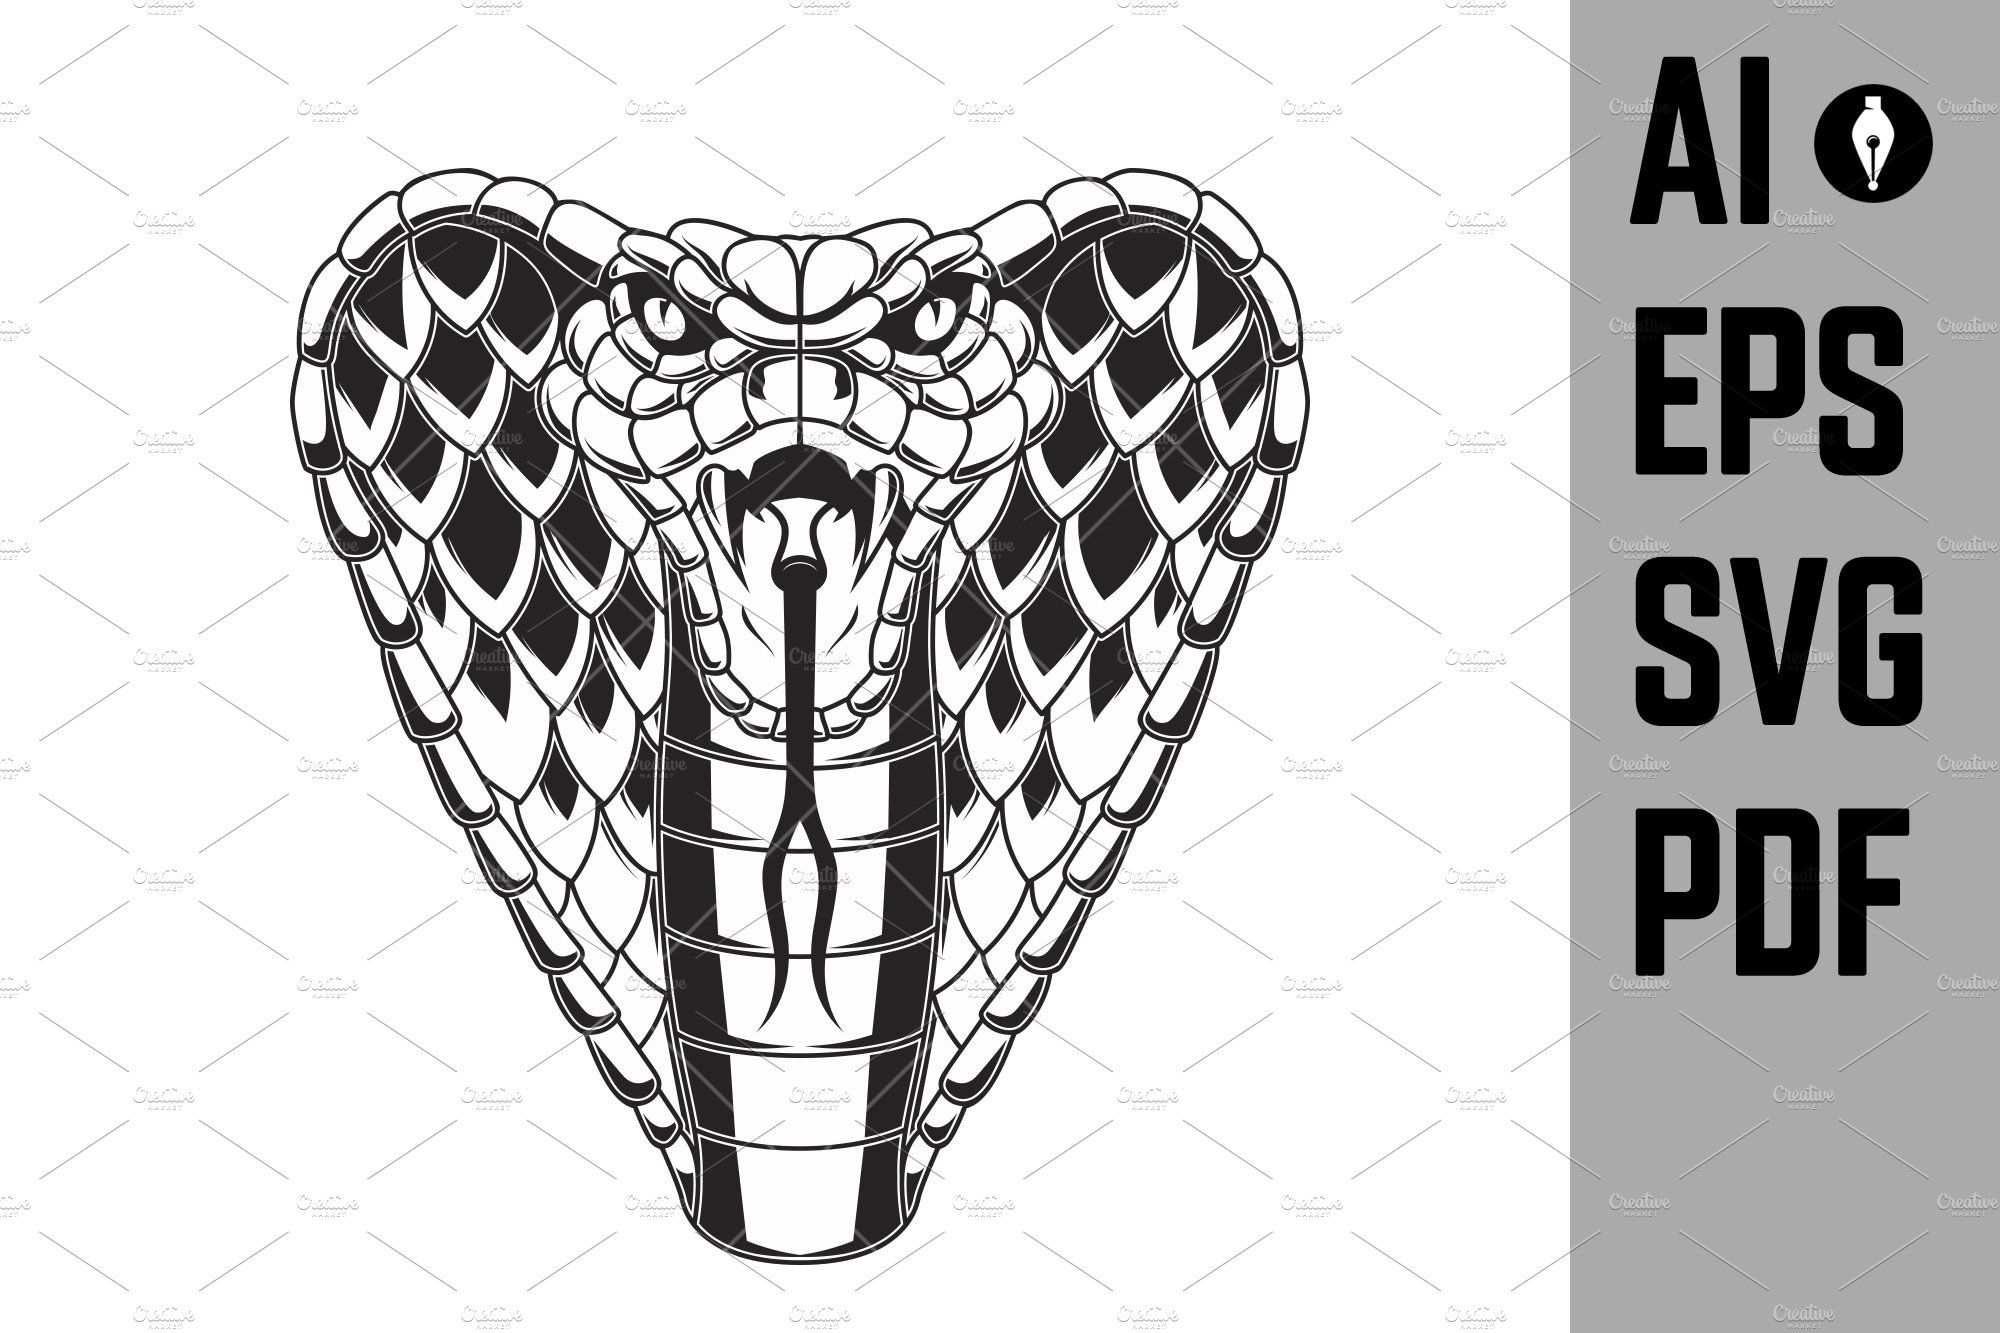 Illustration of cobra snake. Design cover image.